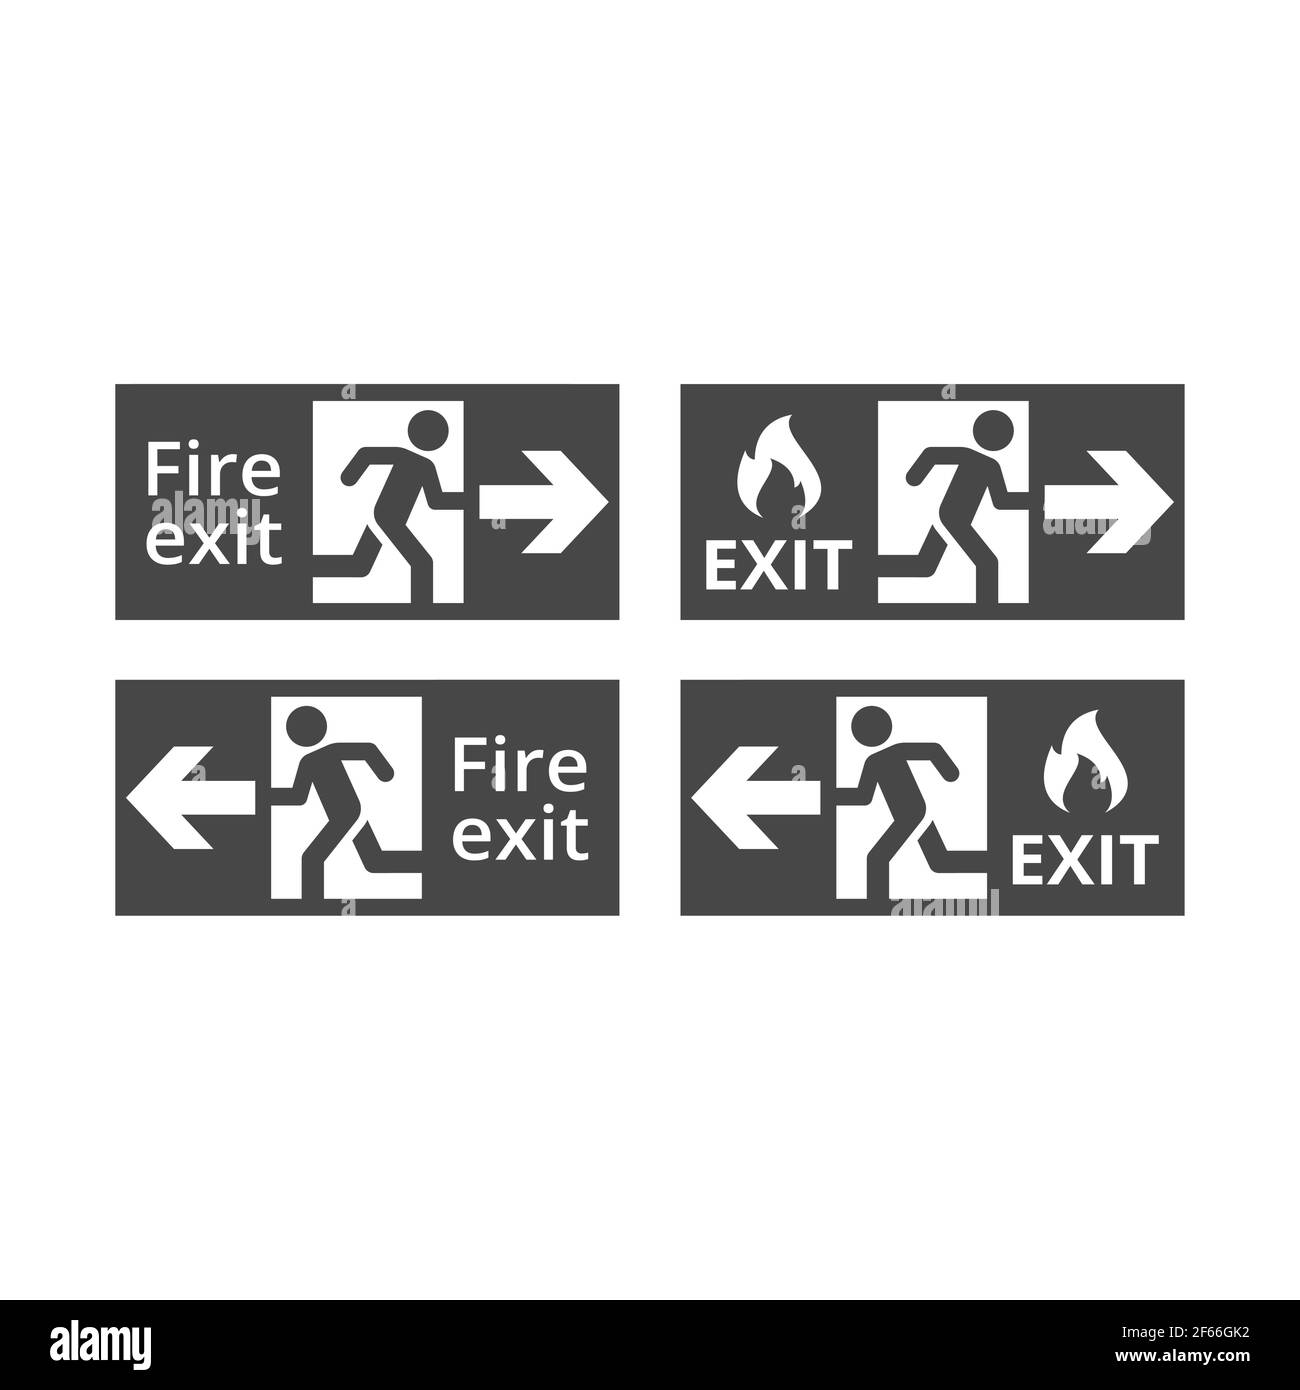 Segnale vettoriale nero di uscita dal fuoco. Icona di fuga fuoco con porta, uomo in marcia e fiamma. Illustrazione Vettoriale